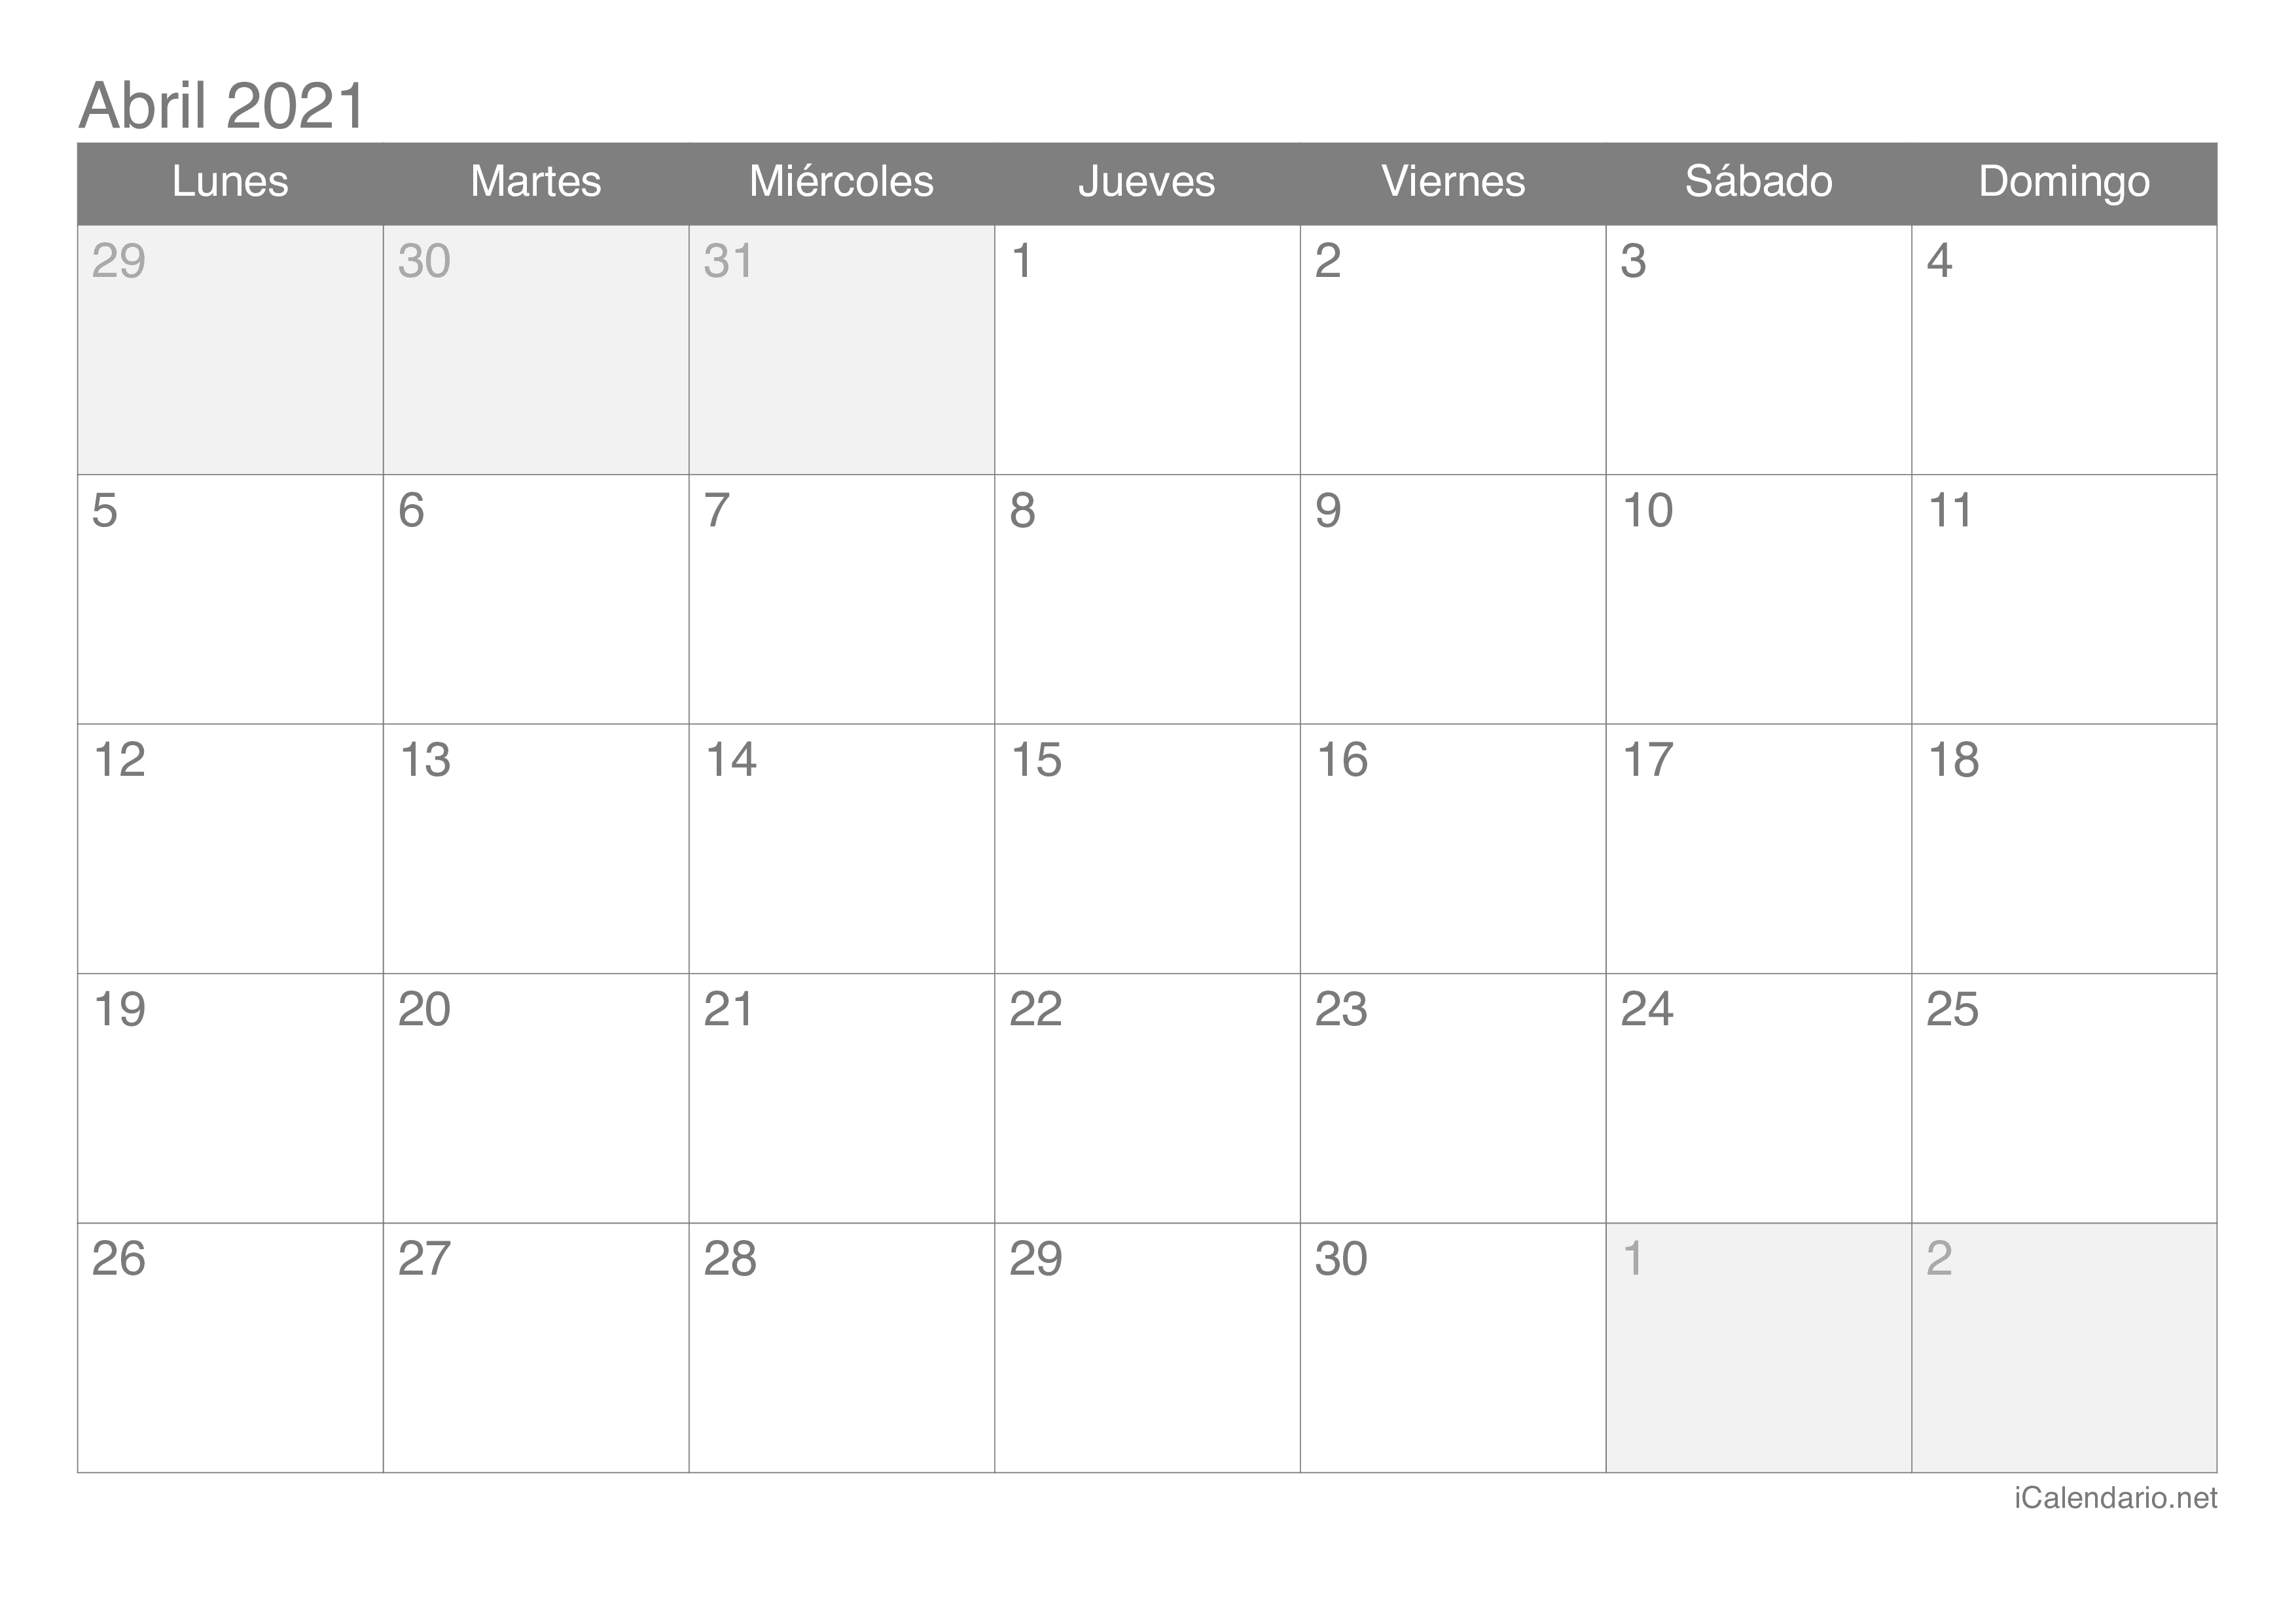 calendario mes abril 2021 Calendario Abril 2021 Para Imprimir Icalendario Net calendario mes abril 2021